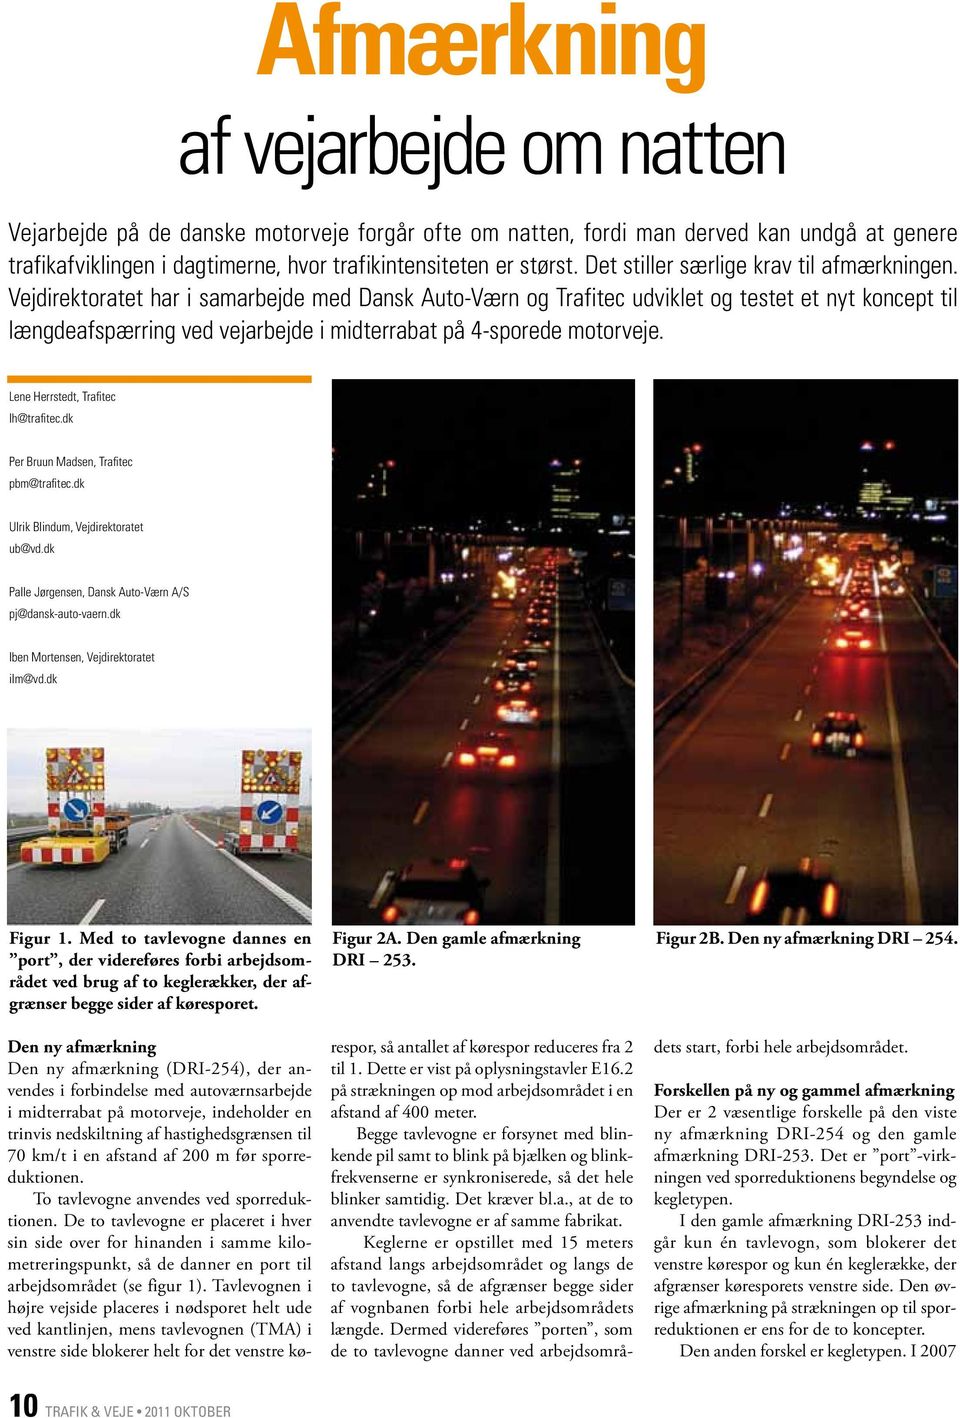 Vejdirektoratet har i samarbejde med Dansk Auto-Værn og Trafitec udviklet og testet et nyt koncept til længdeafspærring ved vejarbejde i midterrabat på 4-sporede motorveje.